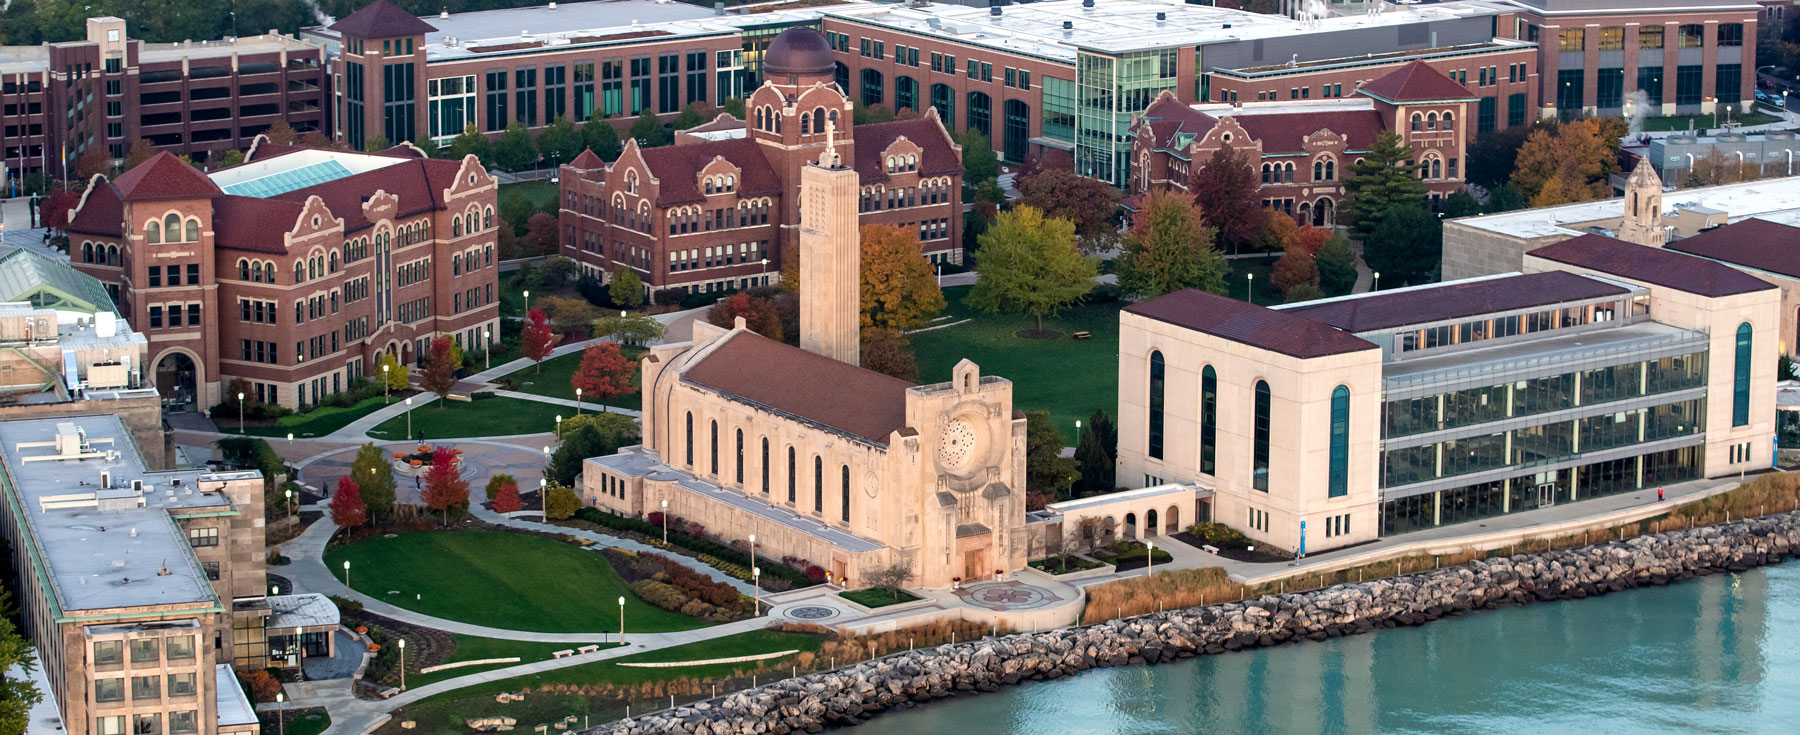 ARI Homepage: Loyola University Chicago